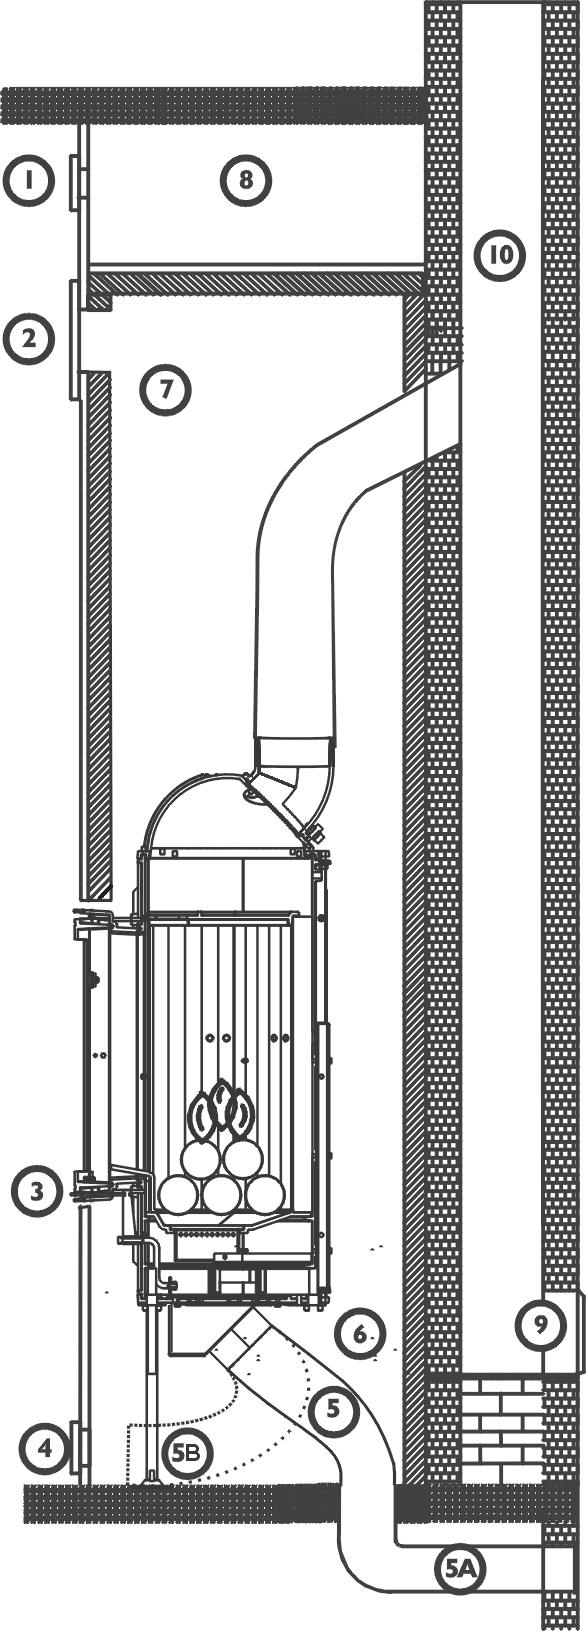 Rys. 10 Przykładowy schemat instalacji wkładu Horn HORN jest żeliwnym, stałopalnym wkładem kominkowym komorą spalania wyłożoną ryflowanymi kształtkami.